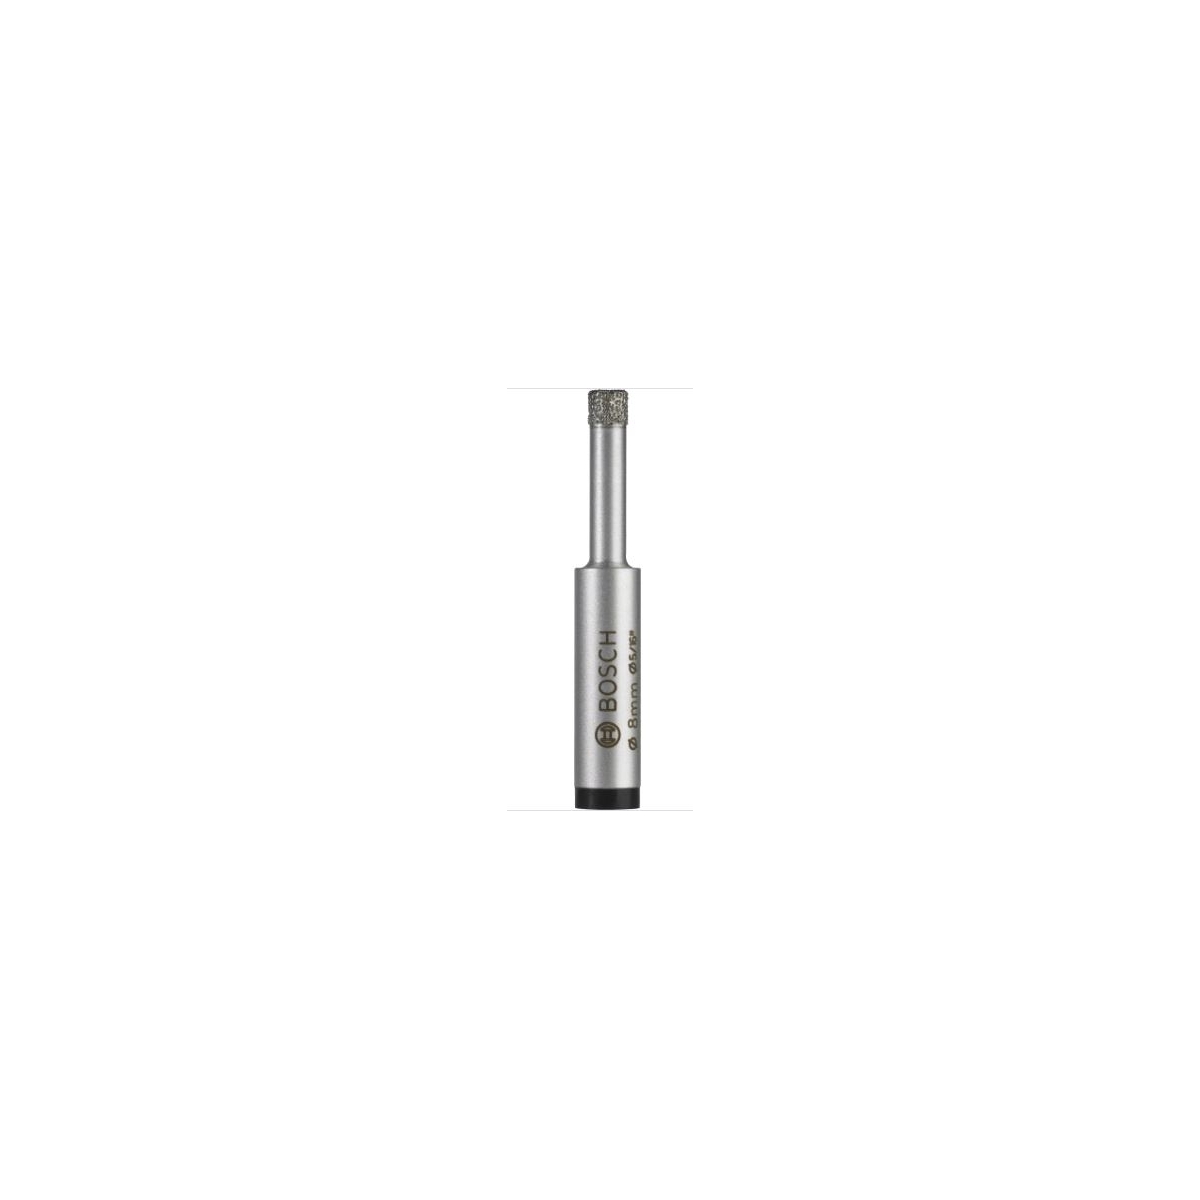 Bosch Easydry Drill Bit 2608587142 - Compre brocas Bosch a preços excelentes.